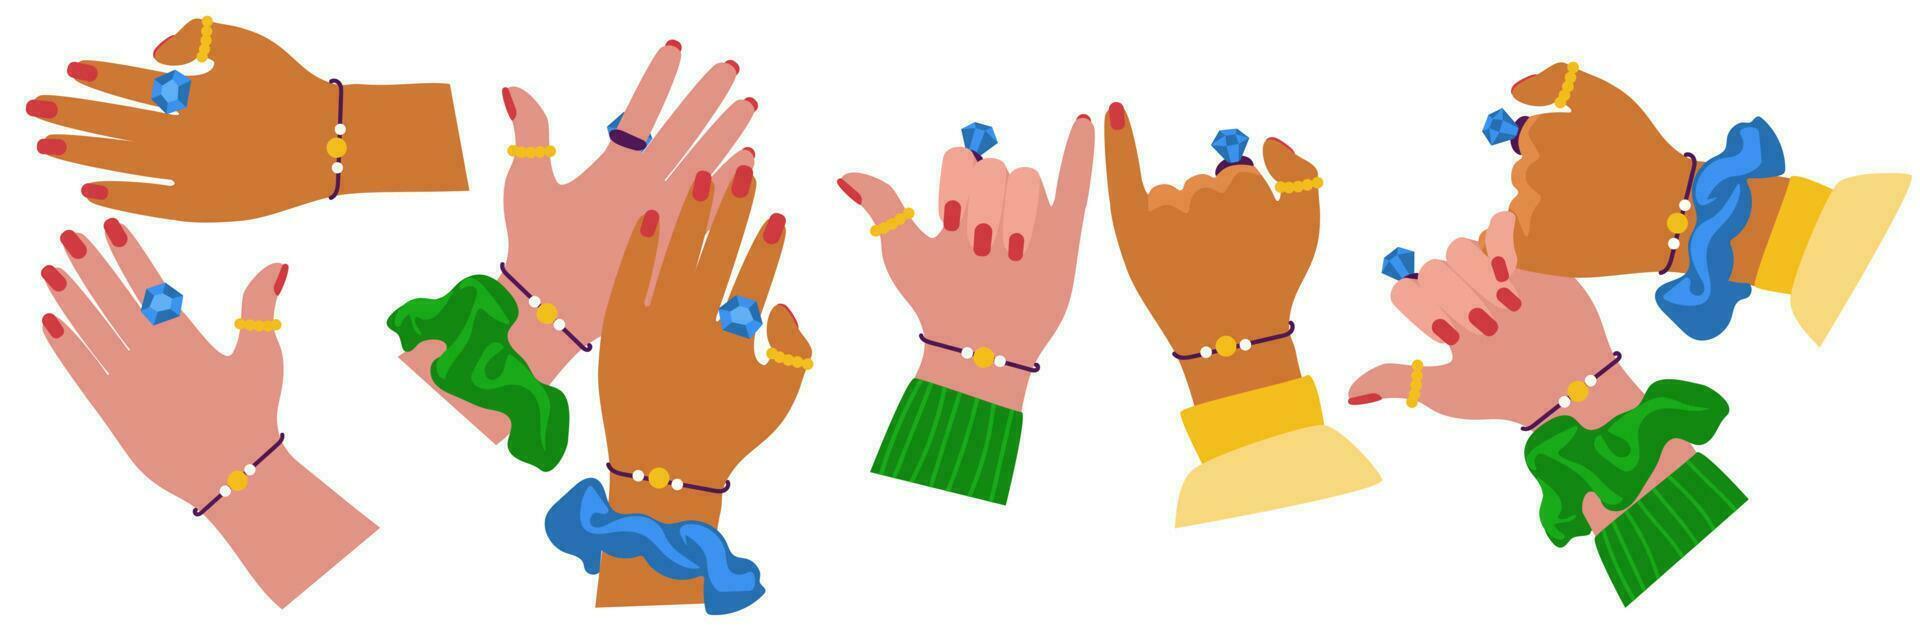 en uppsättning av vänner' händer med de samma Smycken som en symbol av evig vänskap. händer av Stöd, löften, hand spel, kärlek, hälsningar. samling av klistermärken för flick vektor